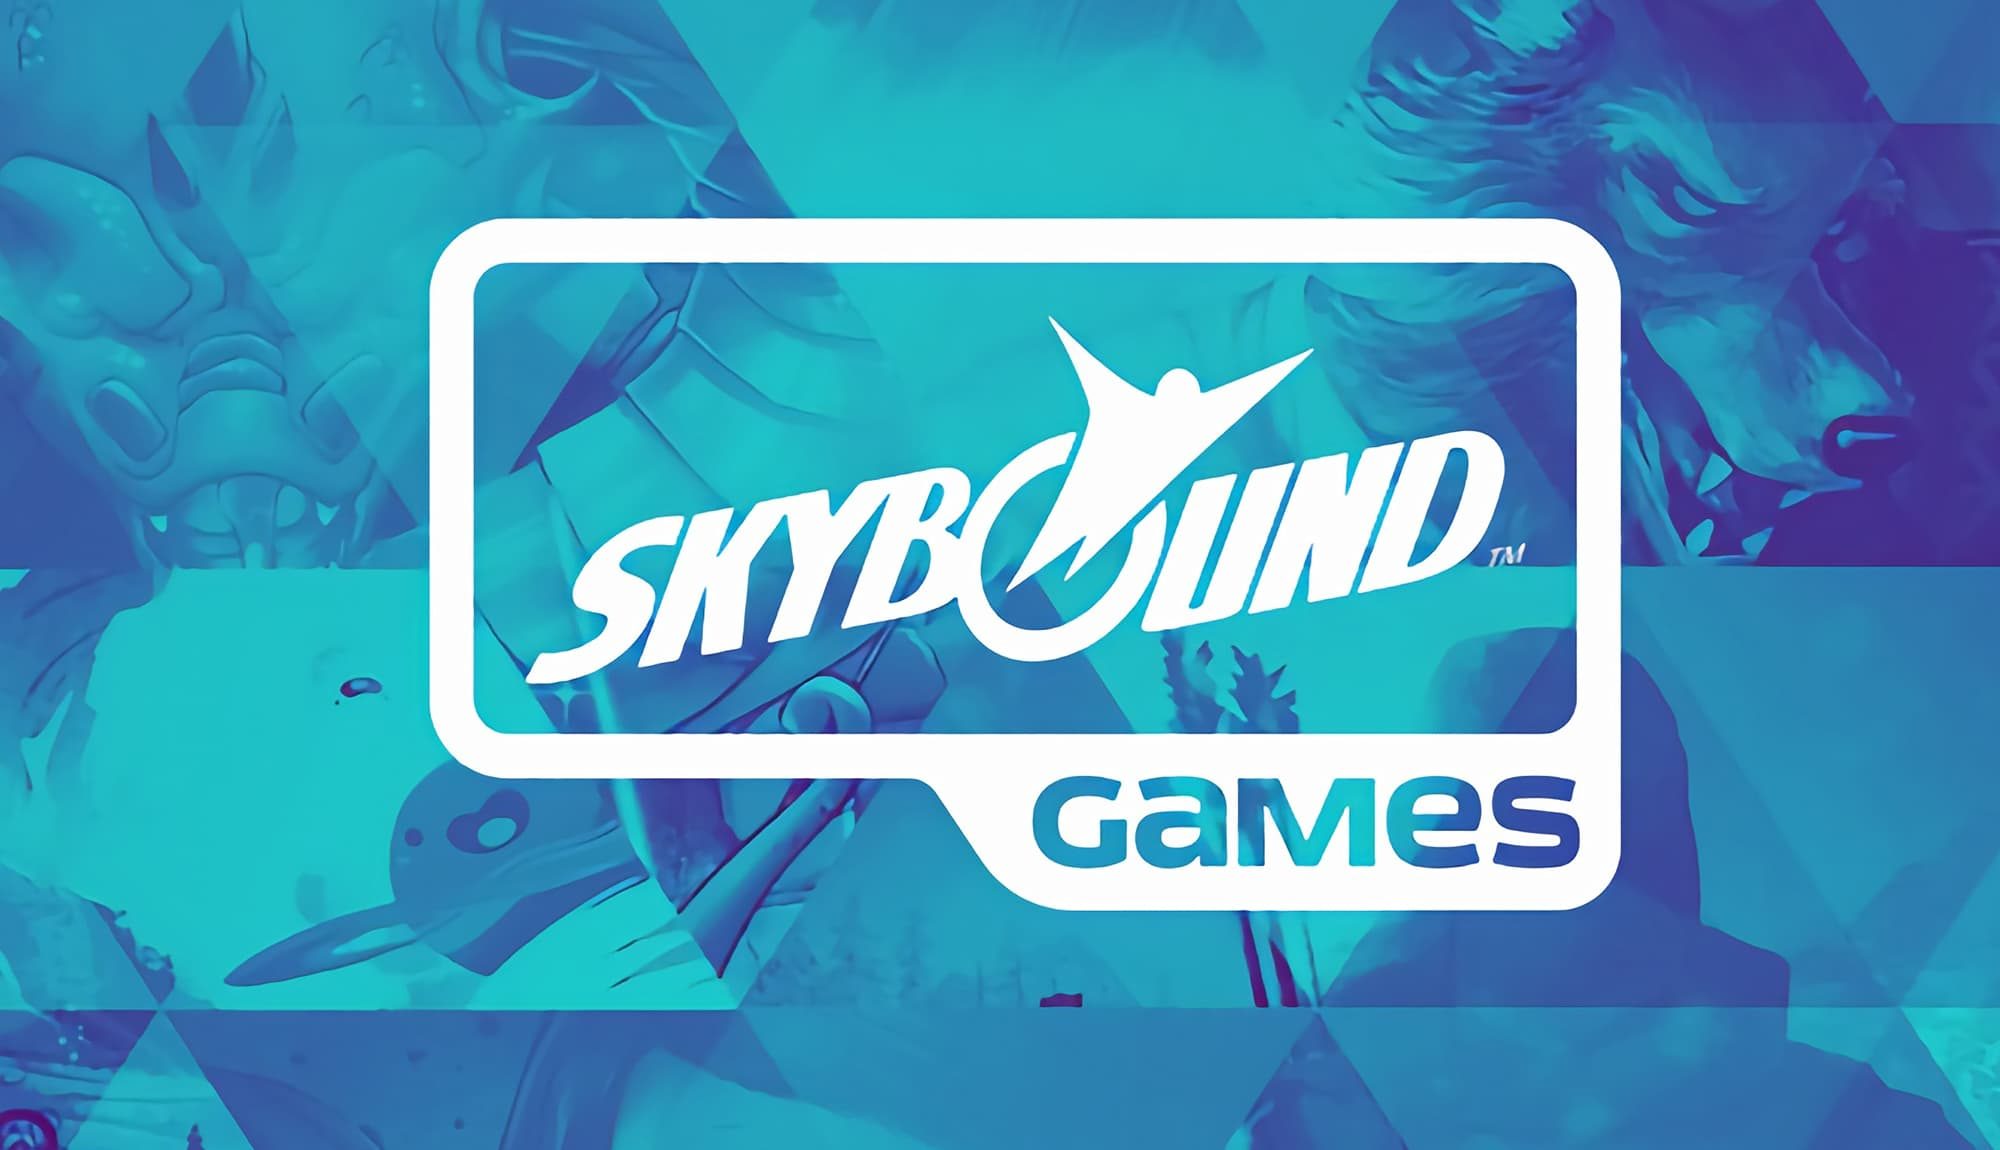 Skybound_Games_Twitter_Feat_1-2000x1150